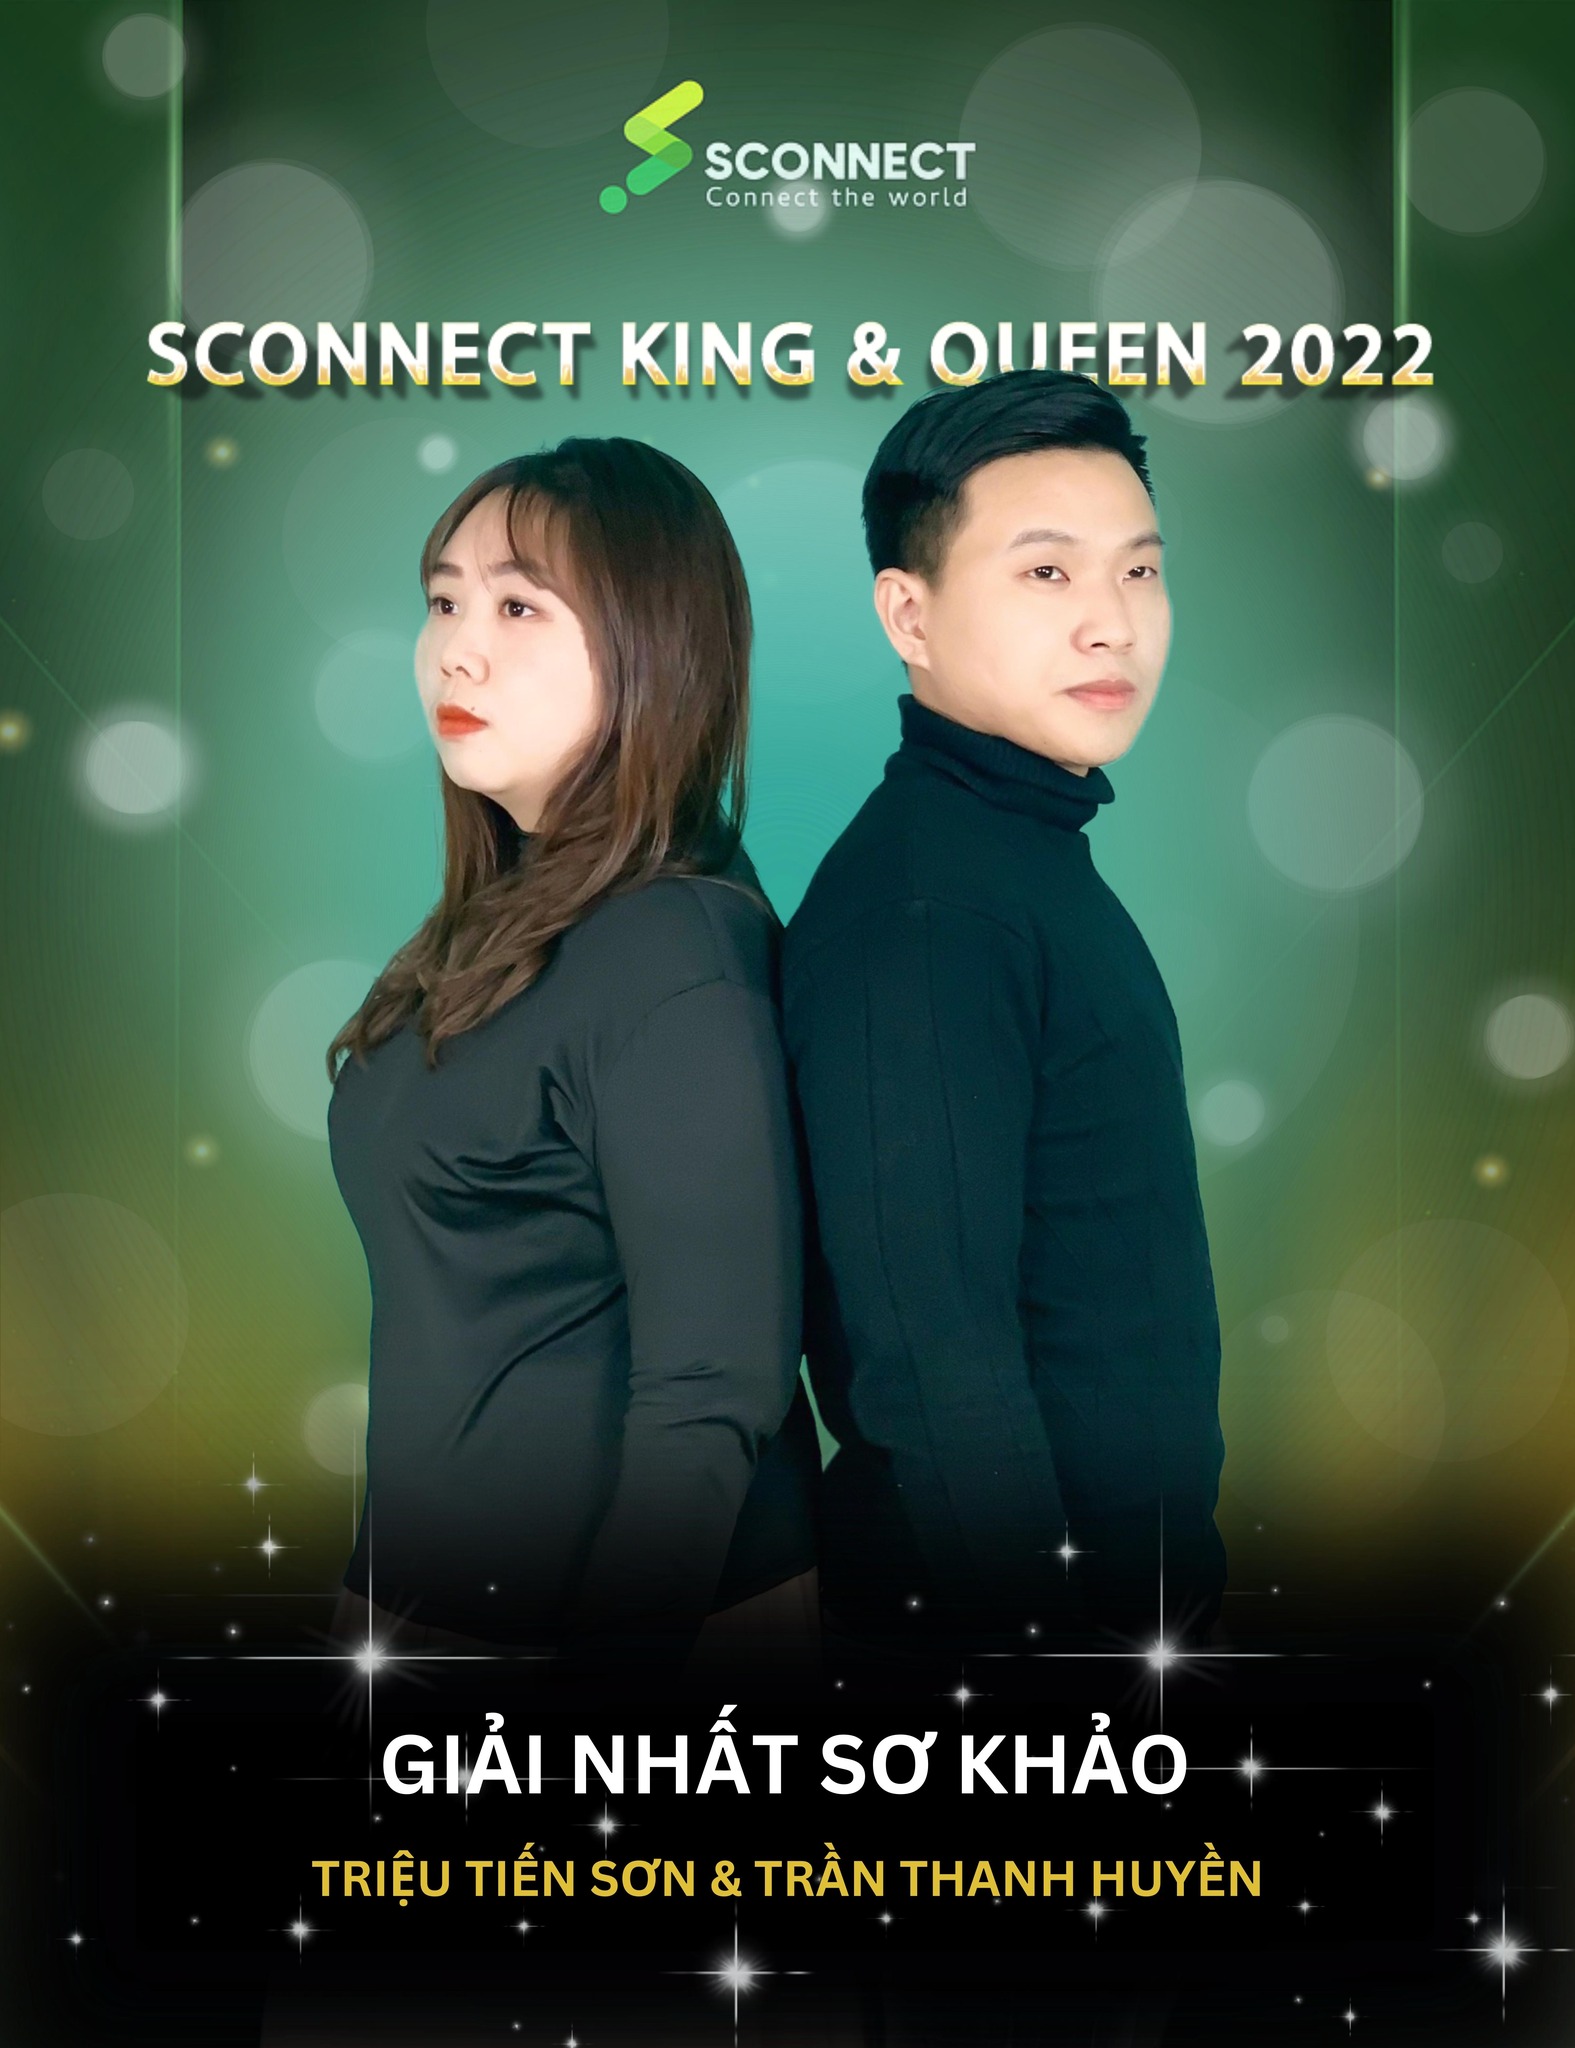 CÔNG BỐ KẾT QUẢ VÒNG SƠ KHẢO CUỘC THI SCONNECT KING & QUEEN 2022